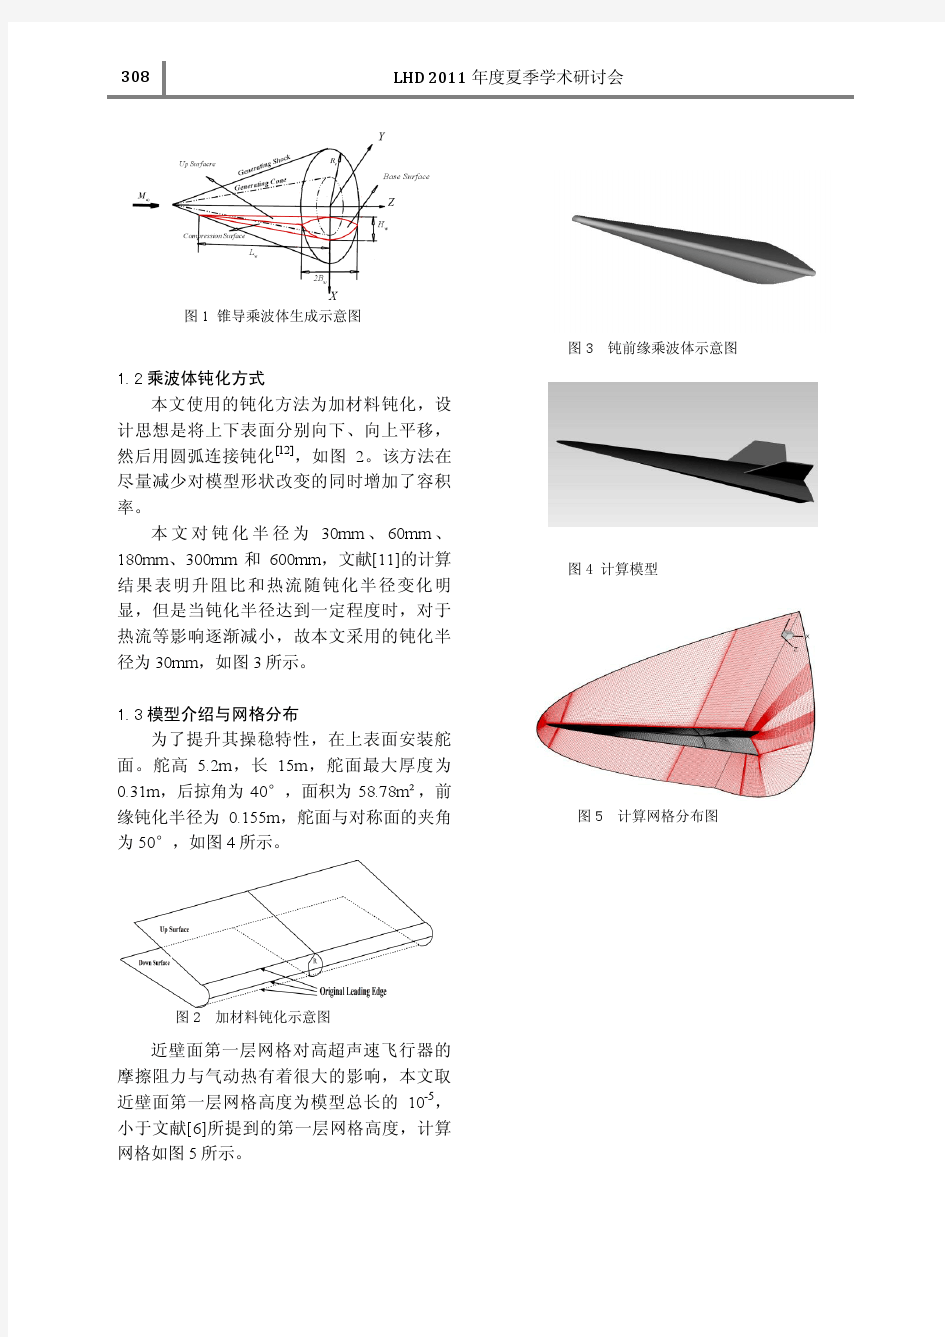 高超声速飞行器摩阻预估 - 中国科学院力学研究所机构知识 …